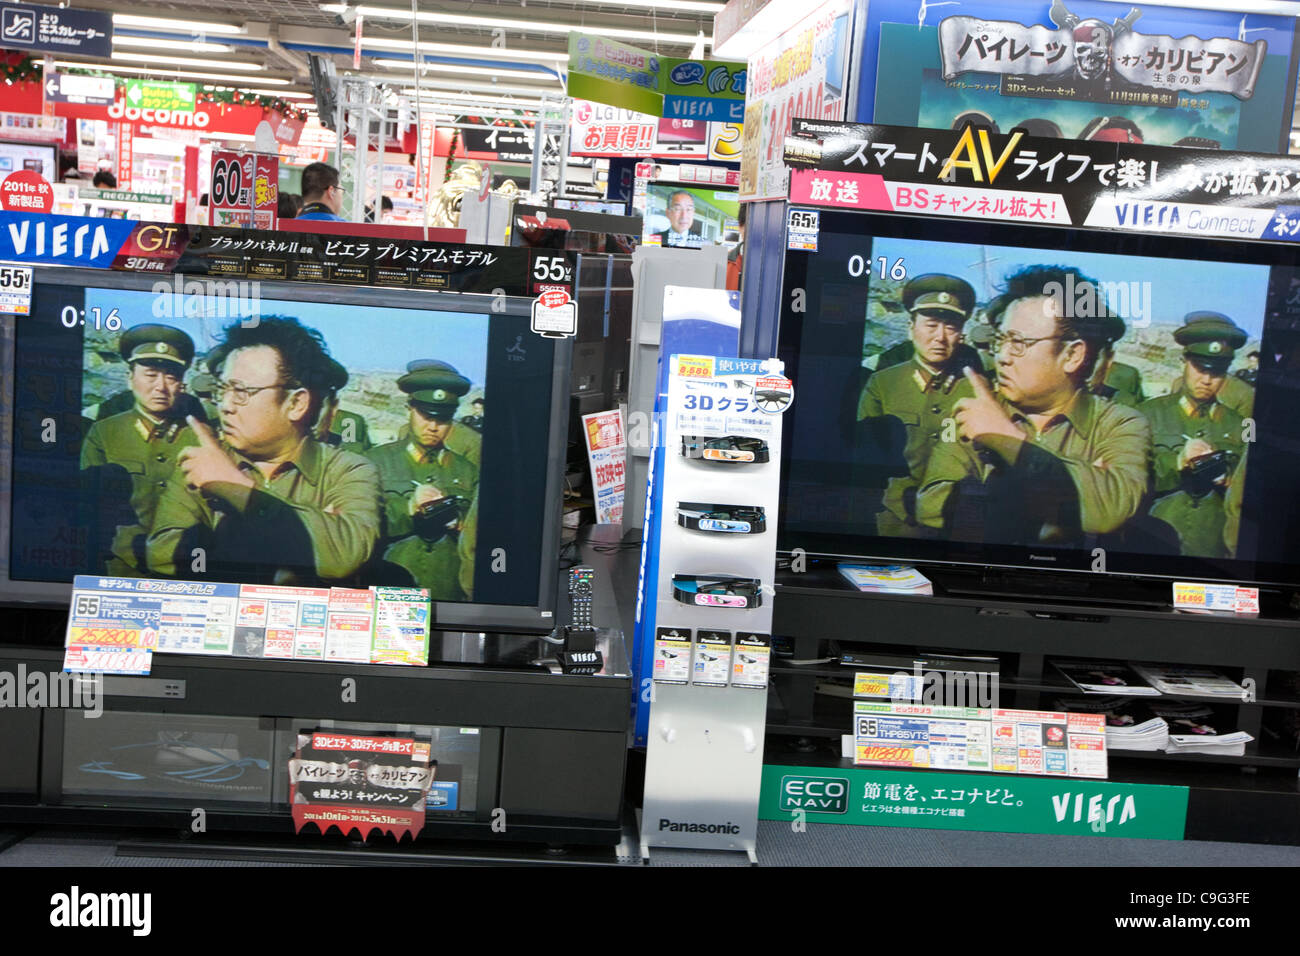 Bilder von Kim Jong-Il erscheinen im japanischen Fernsehen im Zuge seines Todes und Übergang der Macht an seinen Sohn Kim Jong-Un, in Tokio, Japan, am Dienstag, 20. Dezember 2011. Stockfoto